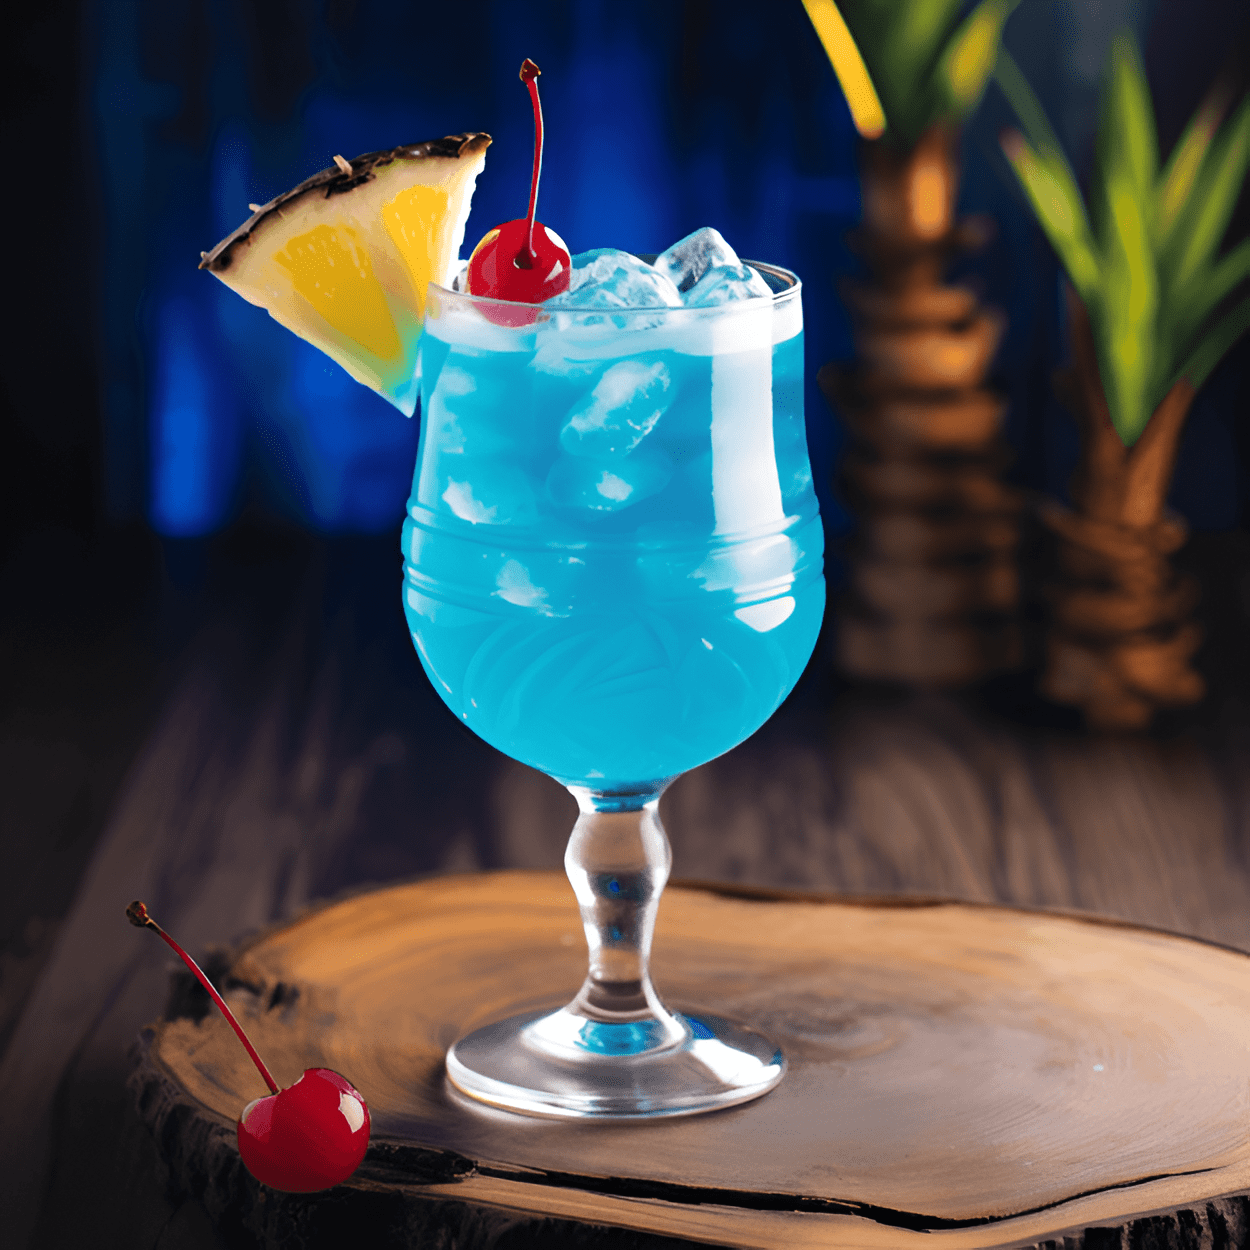 El cóctel Blue Ball es un cóctel dulce y afrutado con un color azul vibrante. Tiene un fuerte sabor a cítricos, con un toque de coco y un ligero sabor agrio de la piña. El curacao azul le da un sabor tropical único que es refrescante y delicioso.